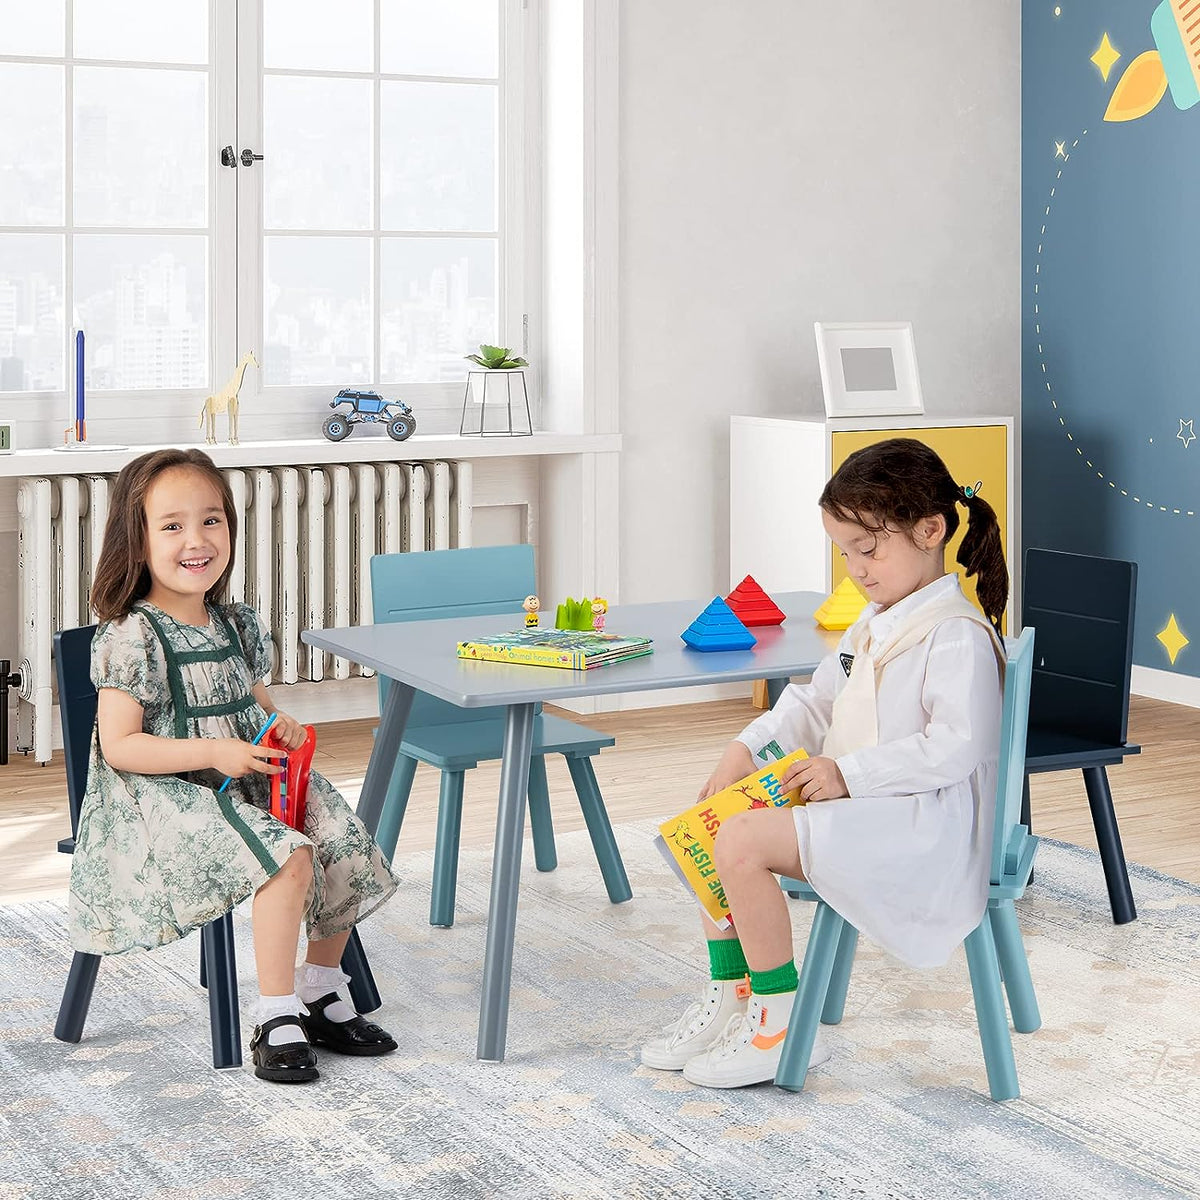 Torre de aprendizaje plegable + mesa y silla – Todo en uno